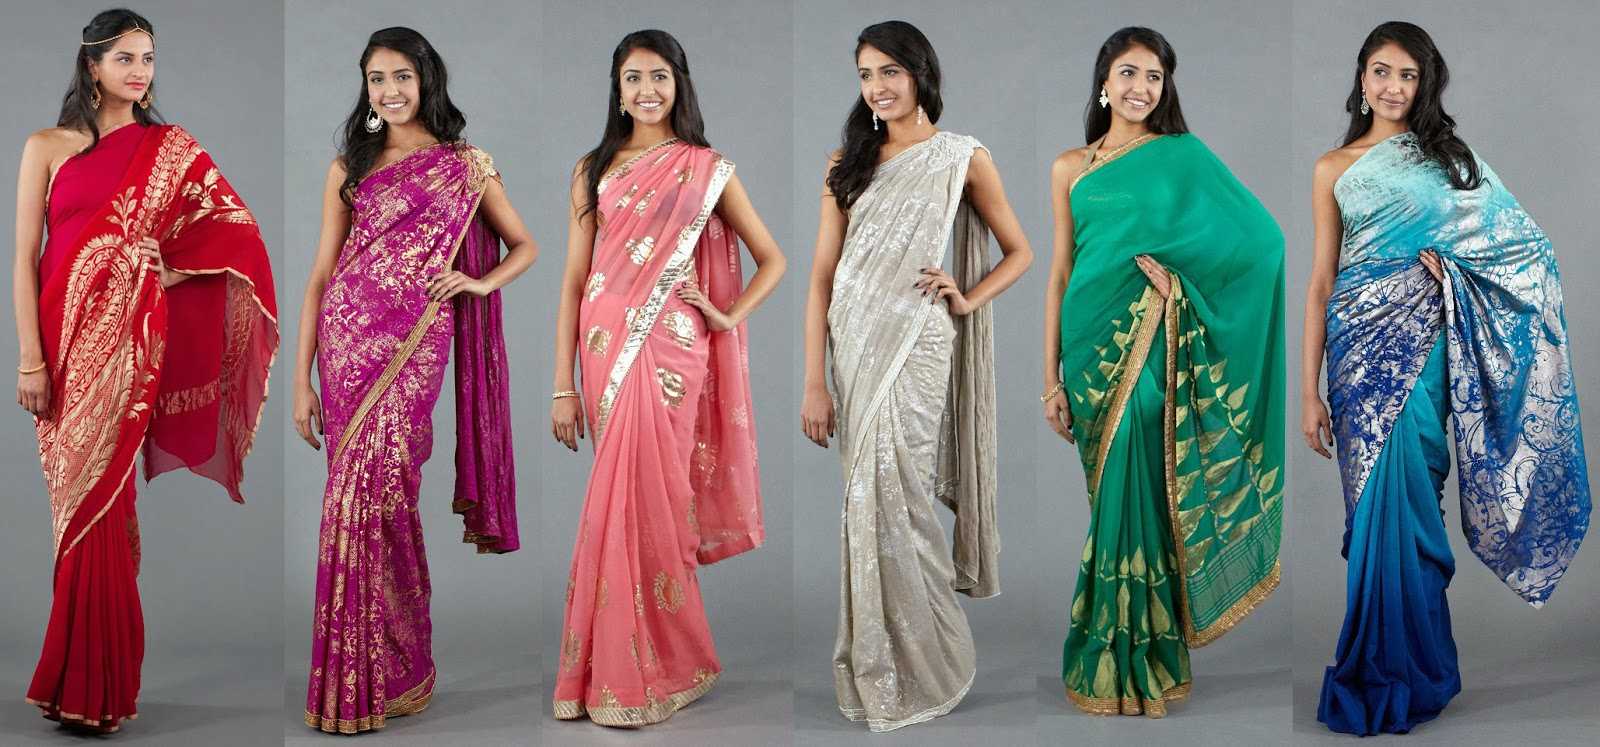 Сари одежда в Индии